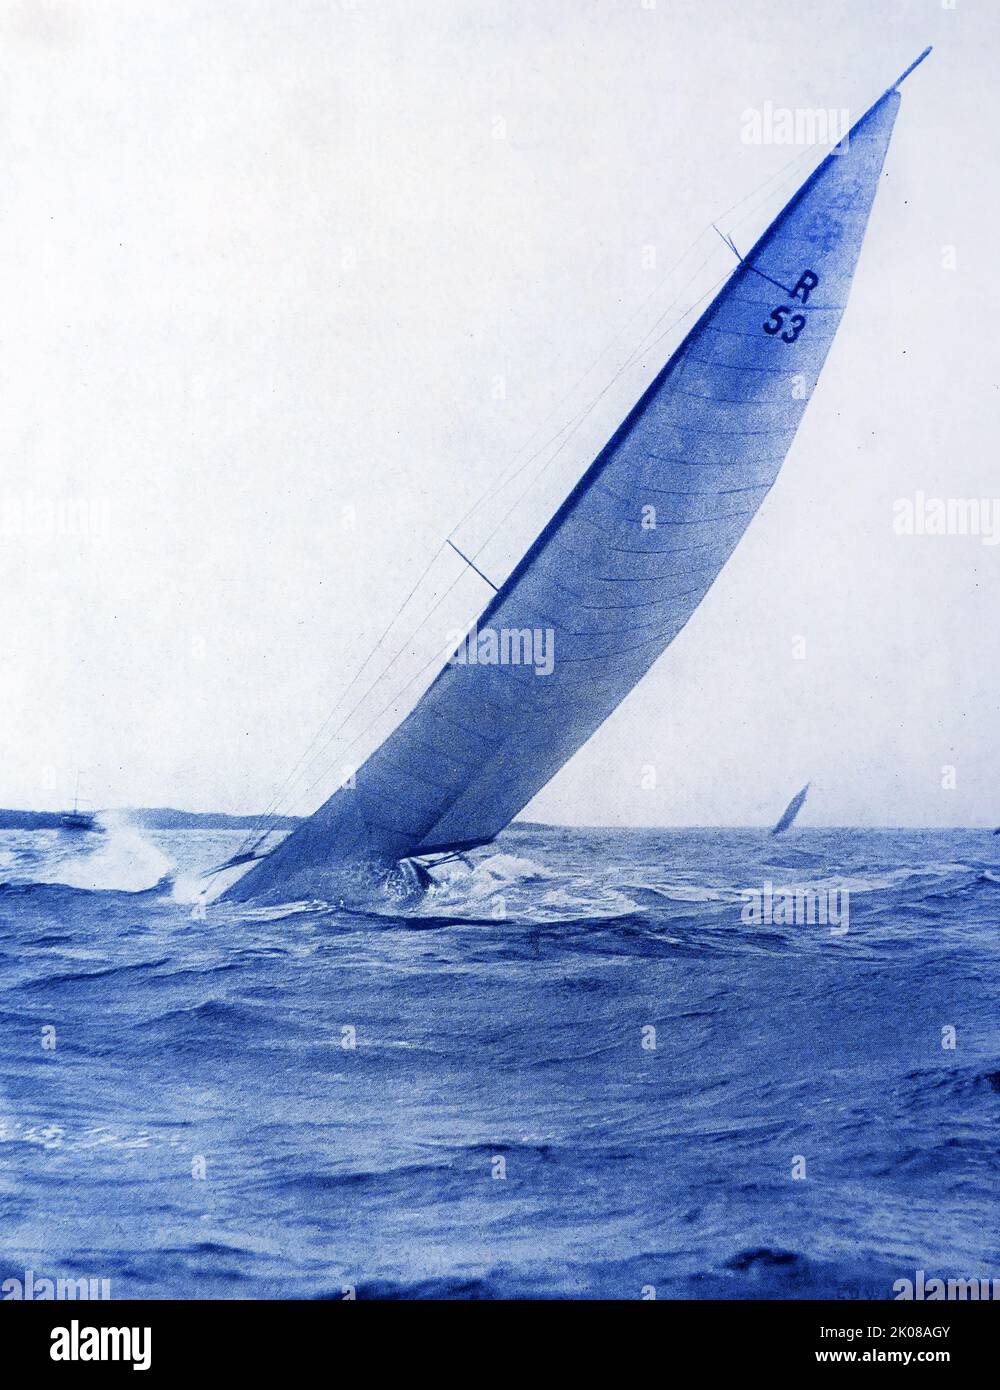 Un bateau R. américain enterrant son nez sur l'océan Atlantique près de New York. Photographie en noir et blanc Banque D'Images